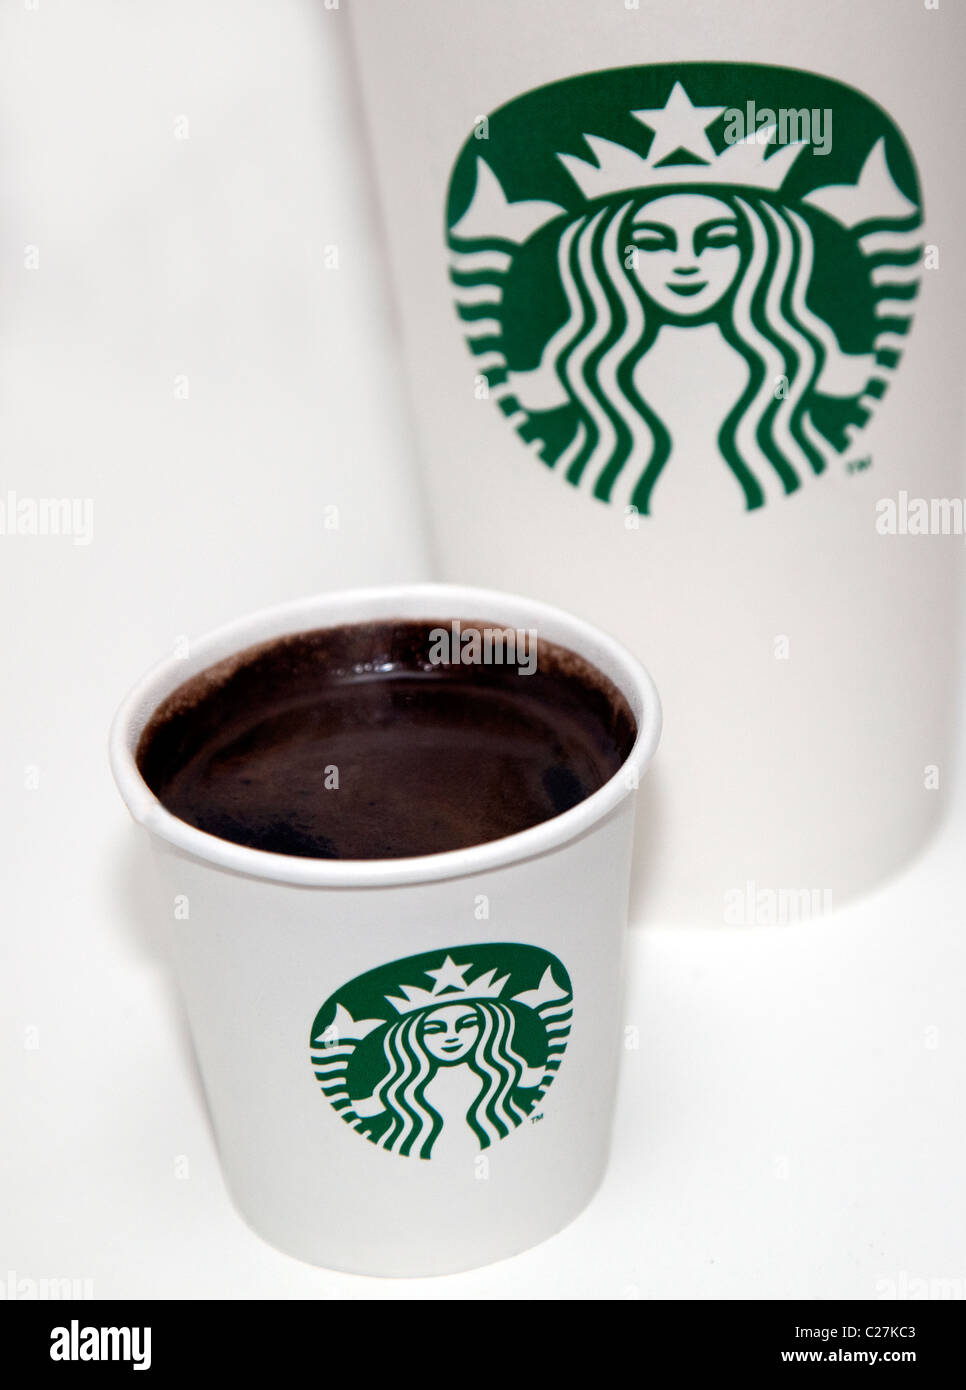 New Starbucks Coffee logo has no name Stock Photo